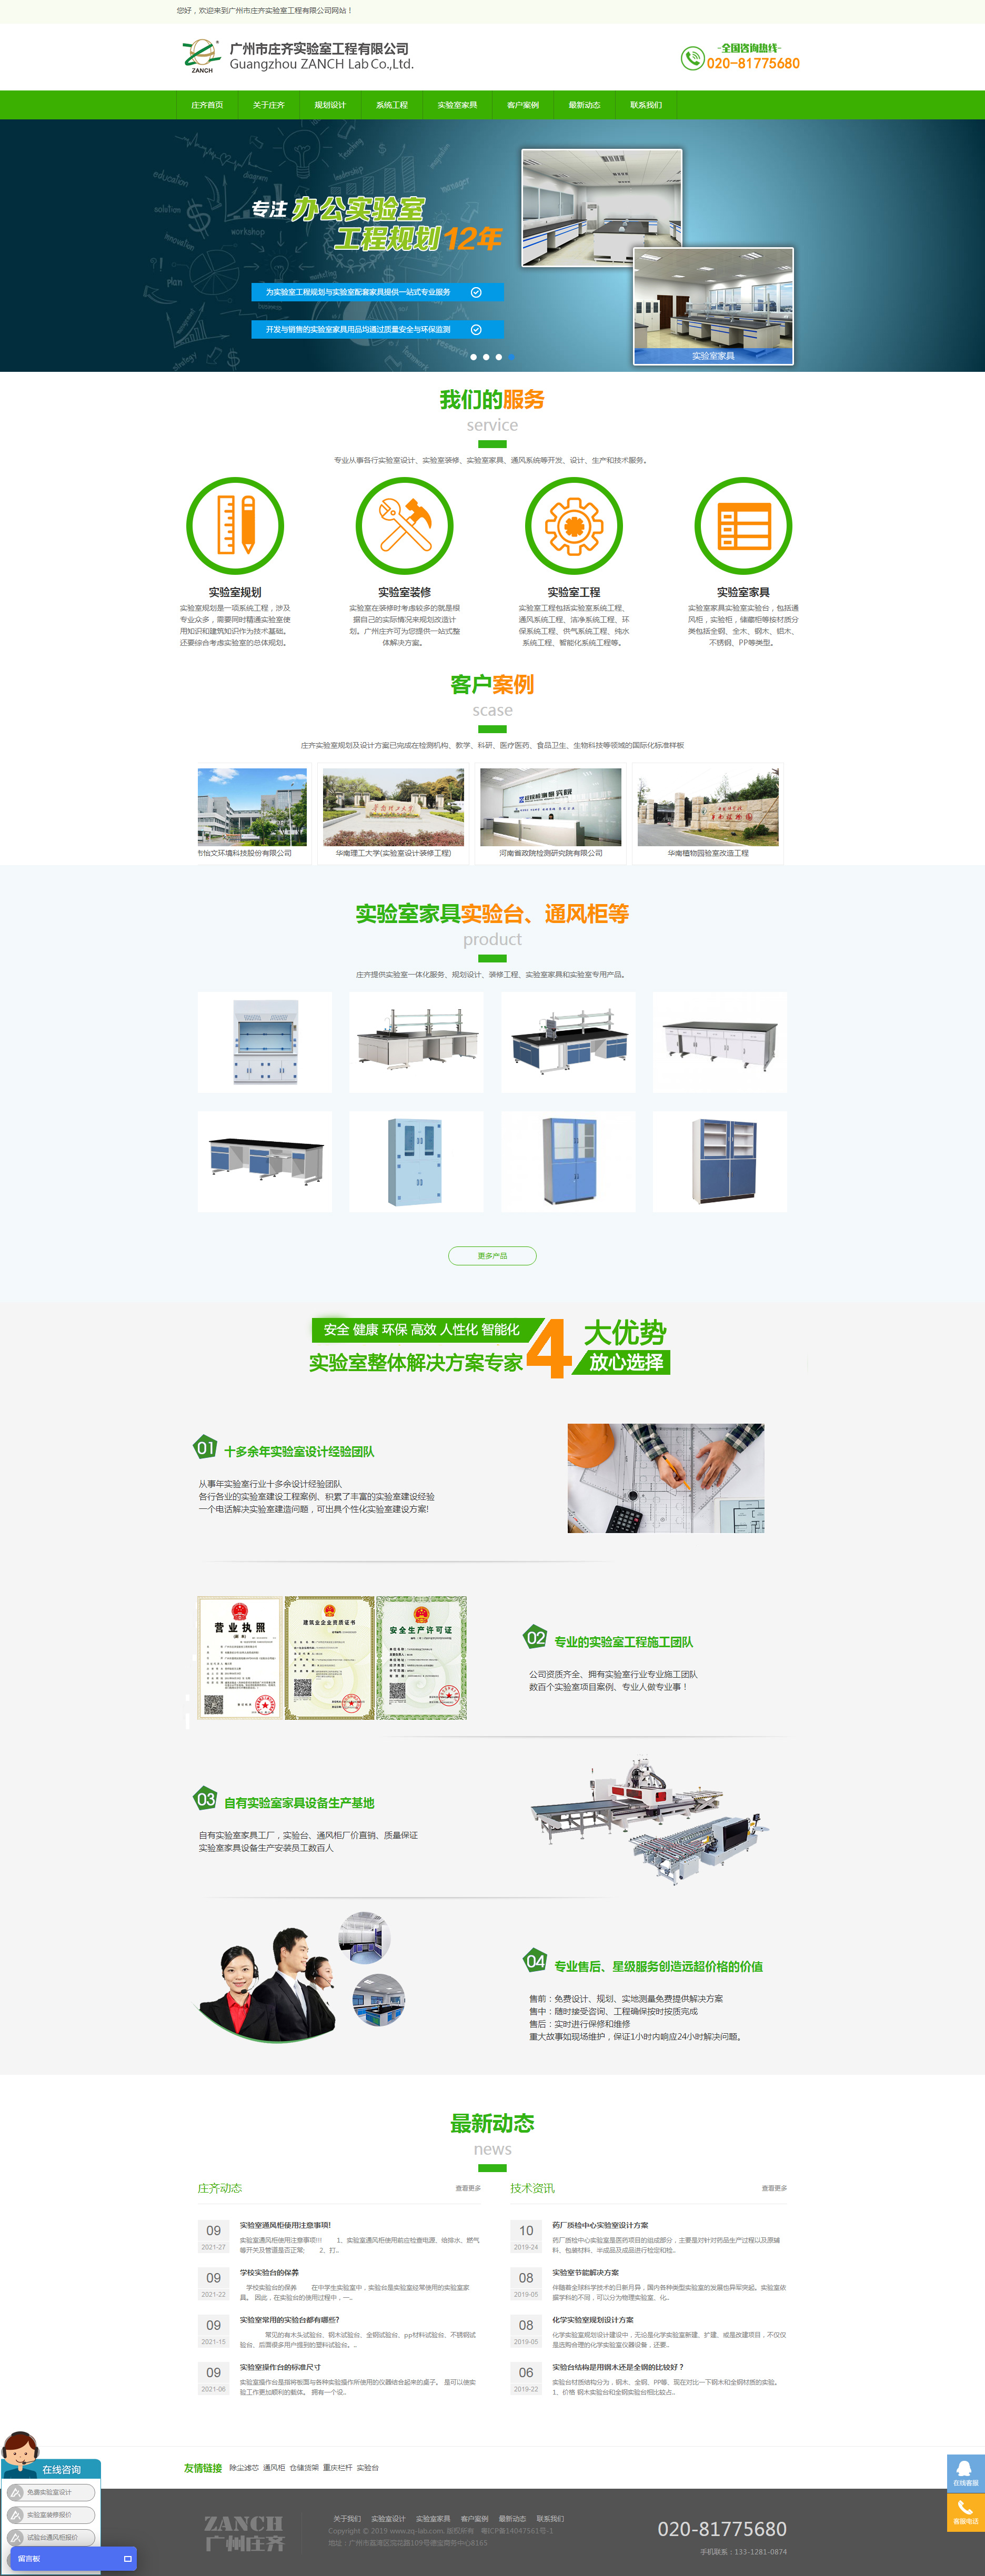 广州庄齐实验室工程网站设计效果图